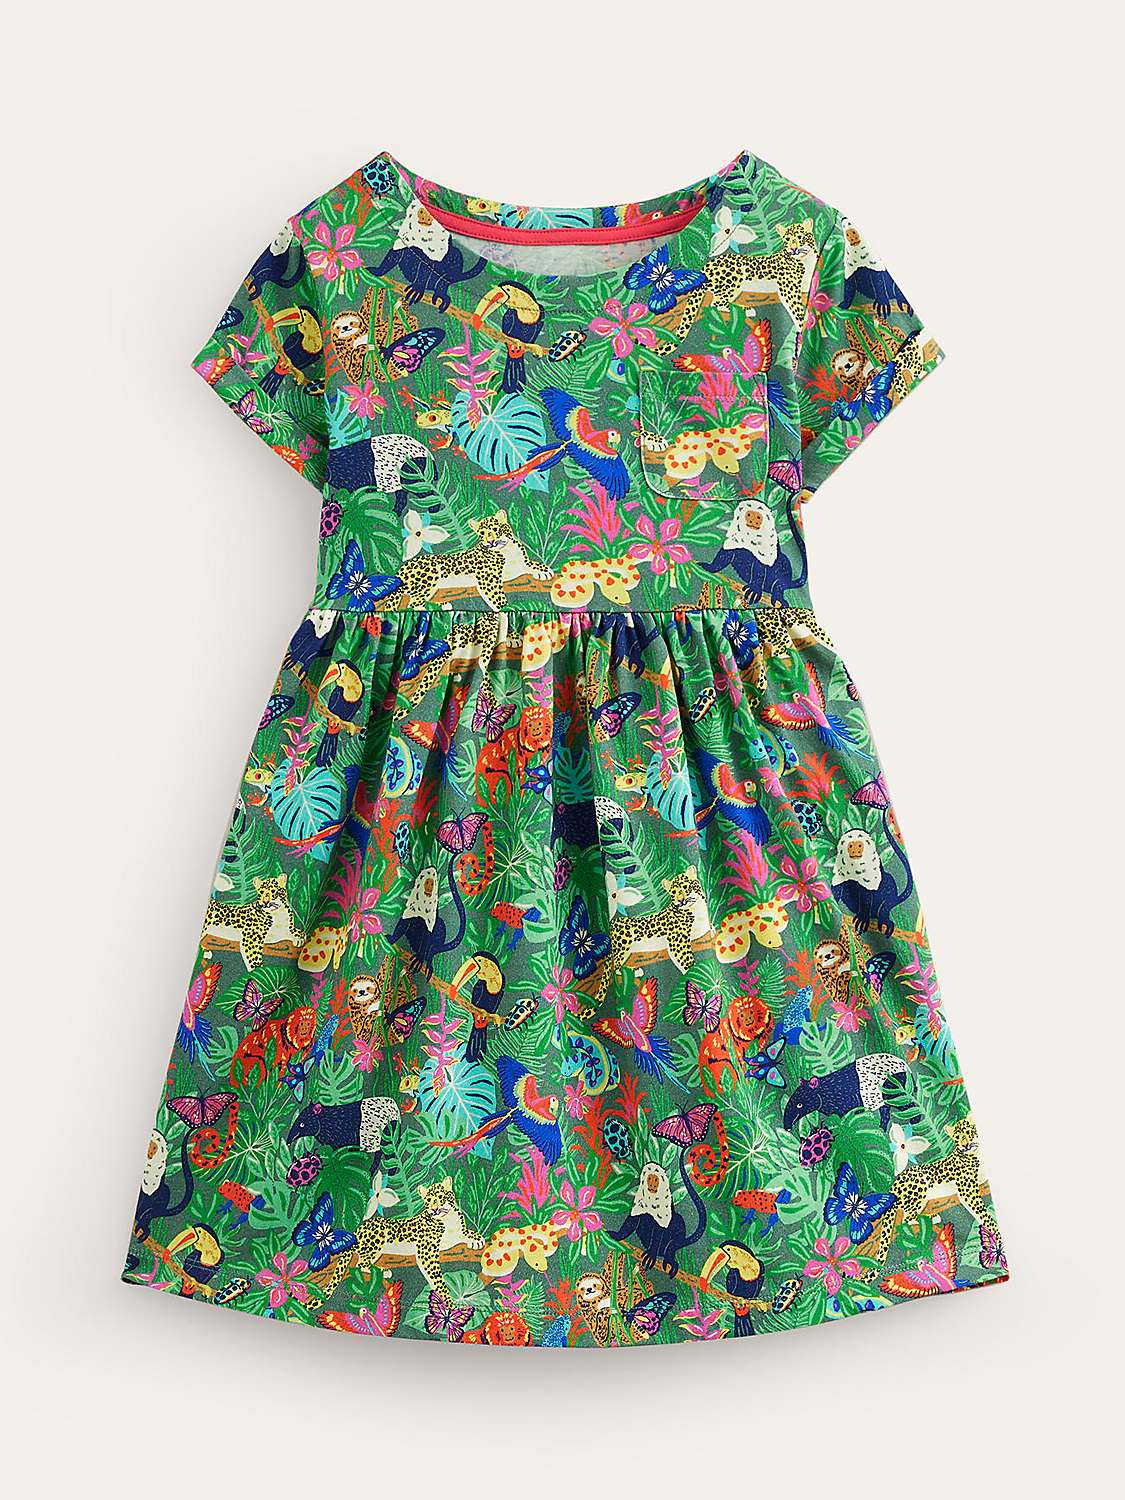 Buy Mini Boden Kids' Fun Jersey Dress, Green Rainforest Online at johnlewis.com